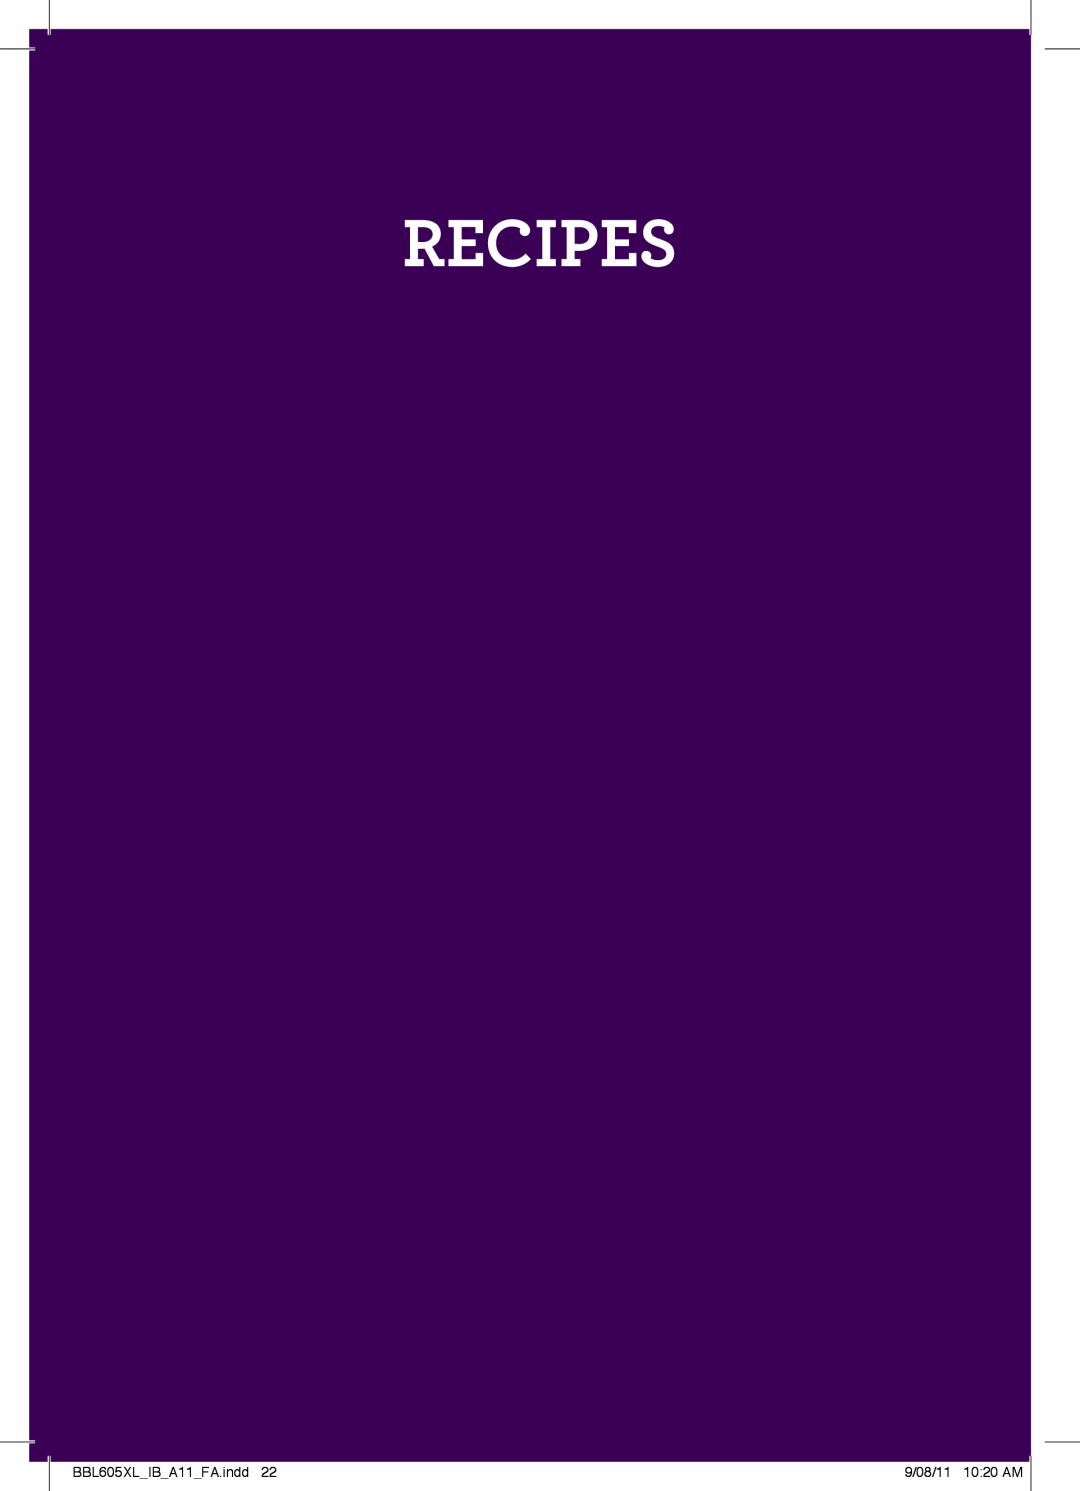 Breville manual Recipes, BBL605XLIBA11FA.indd, 9/08/11 1020 AM 